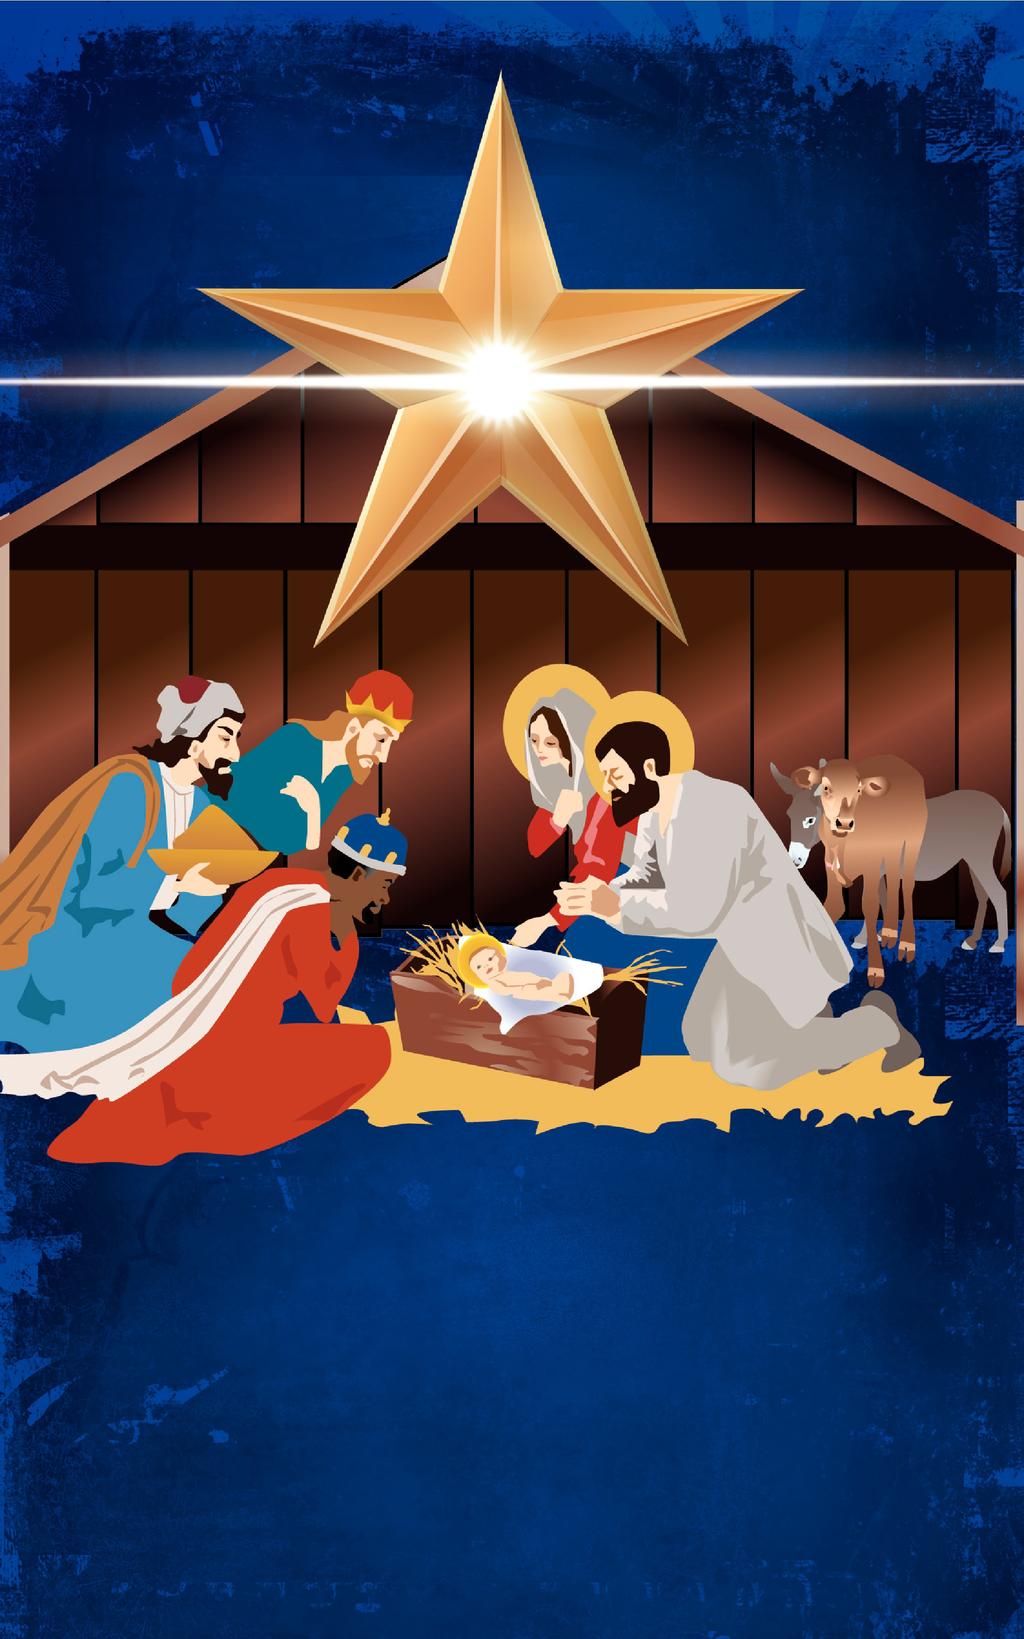 THE BRIGHT STAR OF BETHLEHEM IS BORN A Christmas Eve